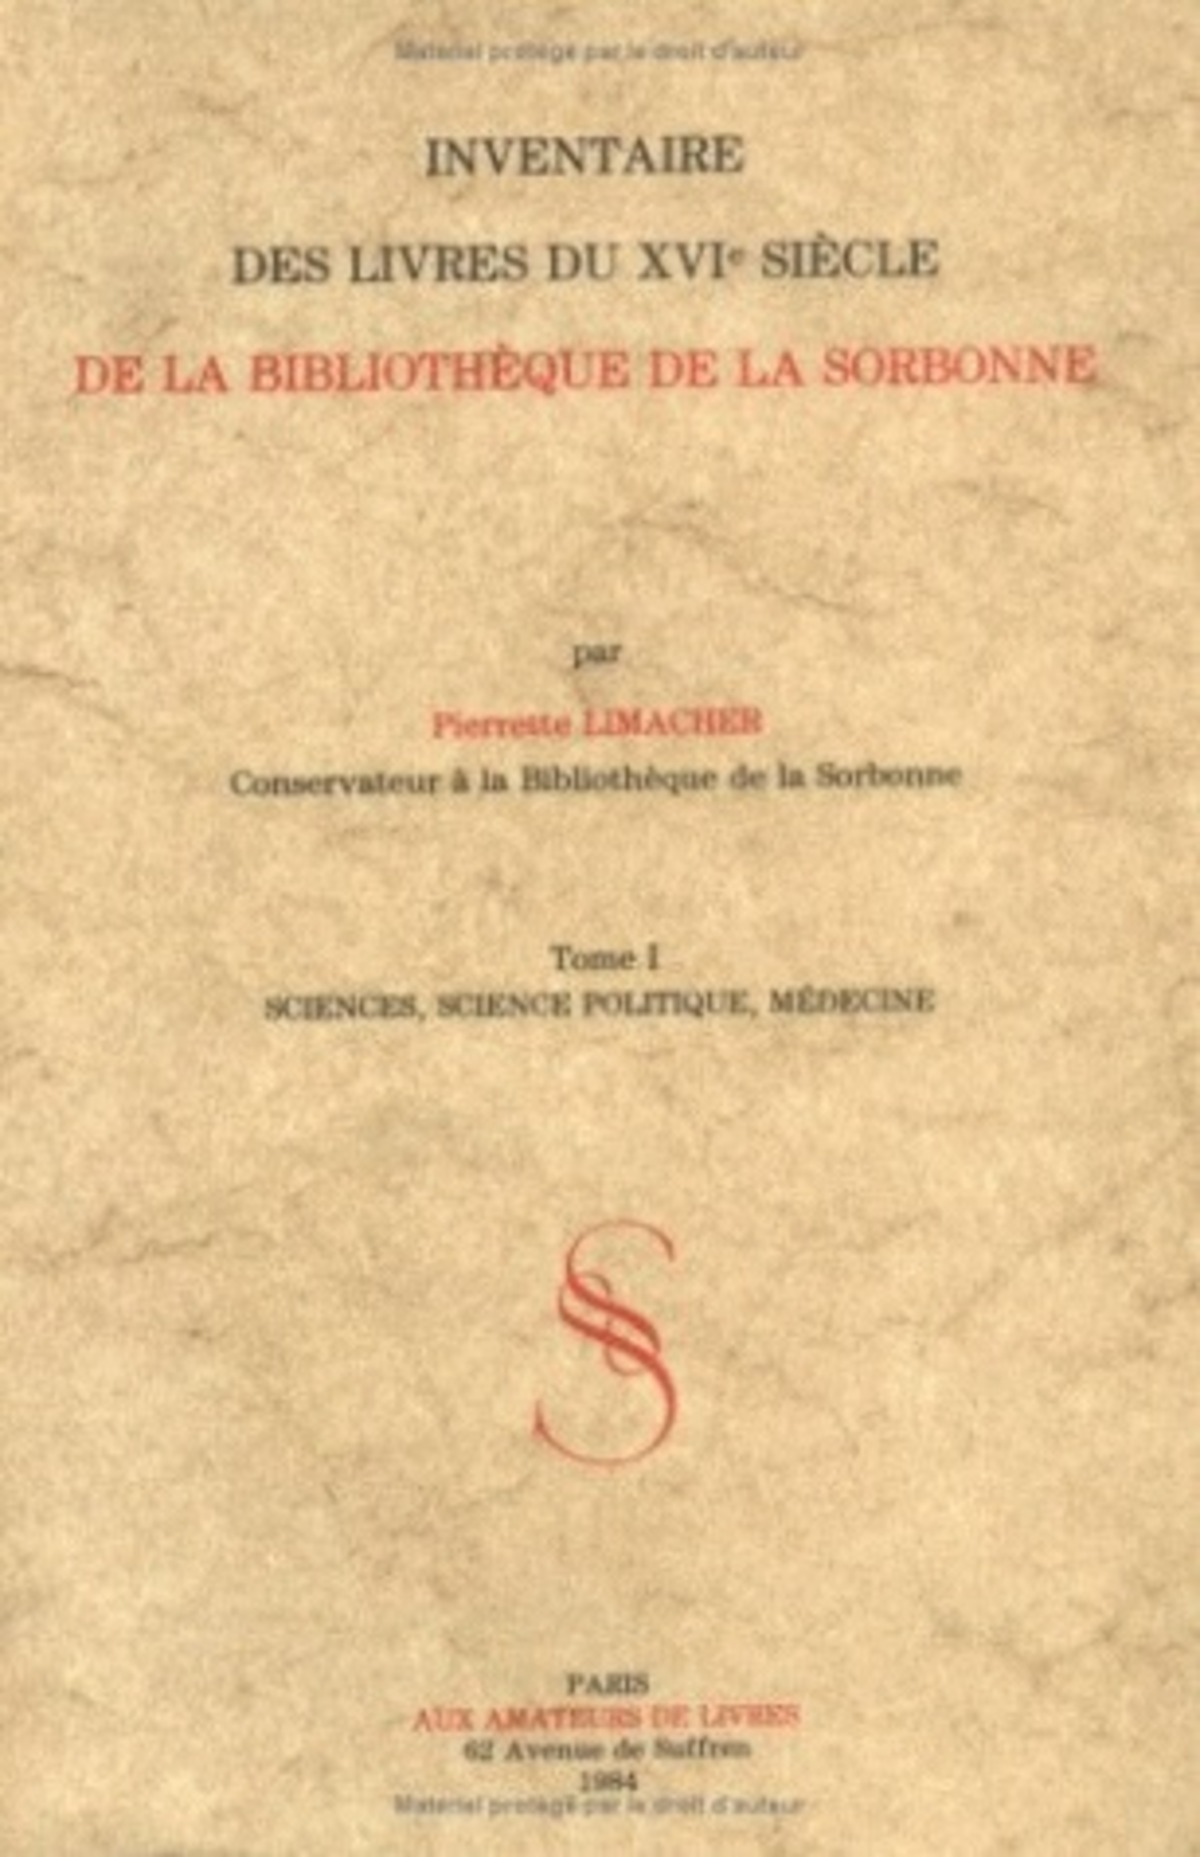 Inventaire des livres du XVIe siècle de la bibliothèque de la Sorbonne. I. Sciences, science politique, médecine